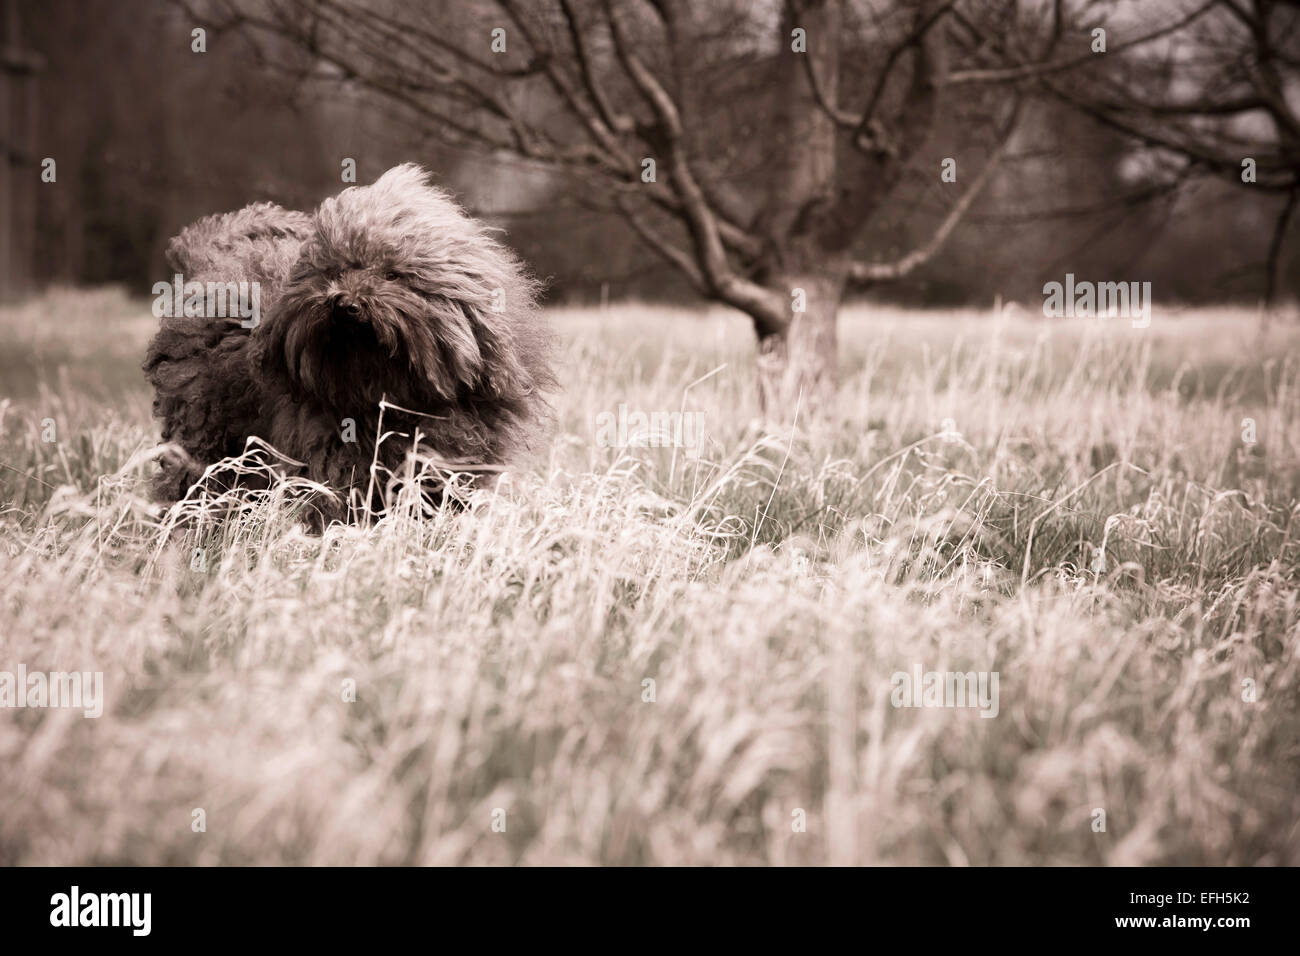 Windswept Langhaarige ungarische Wasser Hund (puli) im langen Gras, Sepia getont Stockfoto